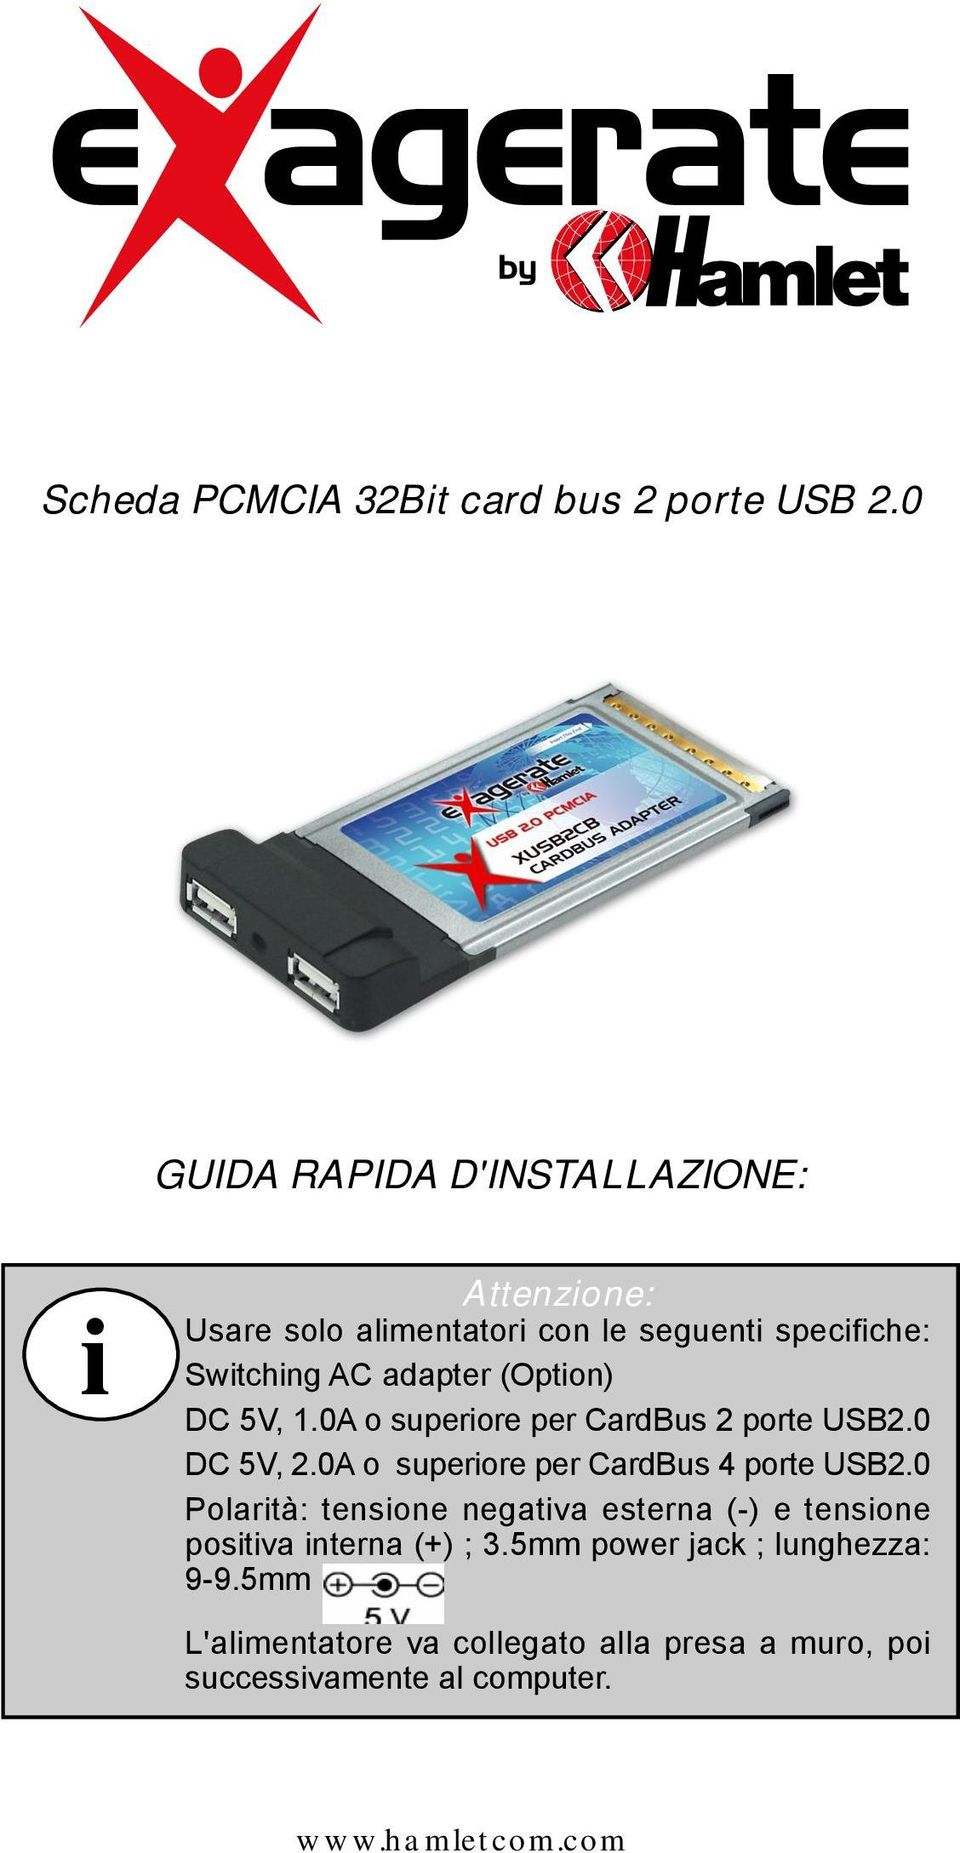 (Option) DC 5V, 1.0A o superiore per CardBus 2 porte USB2.0 DC 5V, 2.0A o superiore per CardBus 4 porte USB2.